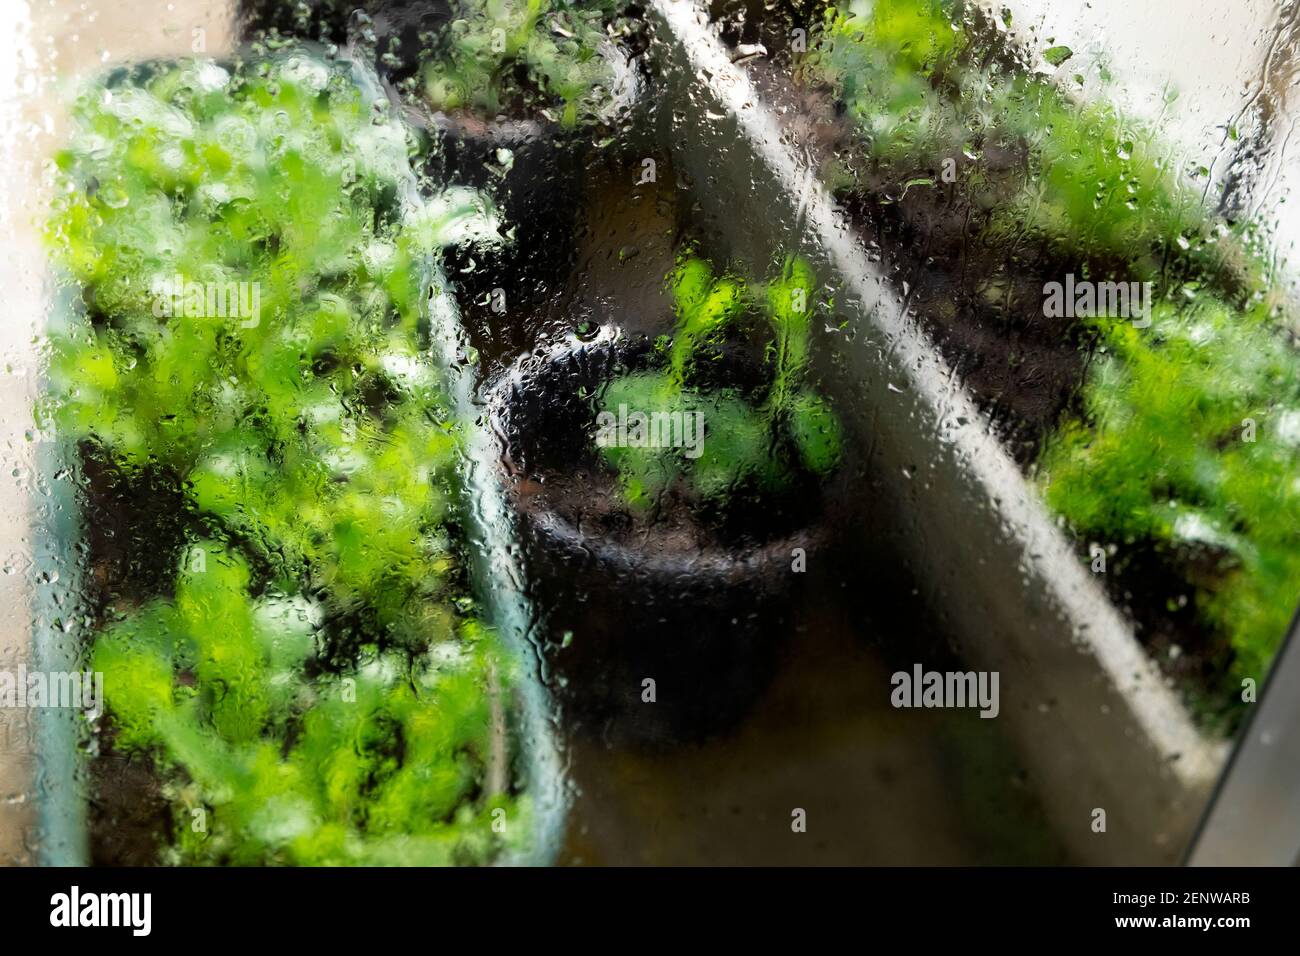 Vista esterna delle lattughe verdi che crescono in contenitori di plastica all'interno di una serra e gocce d'acqua su lastre di vetro In Galles Regno Unito KATHY DEWITT Foto Stock